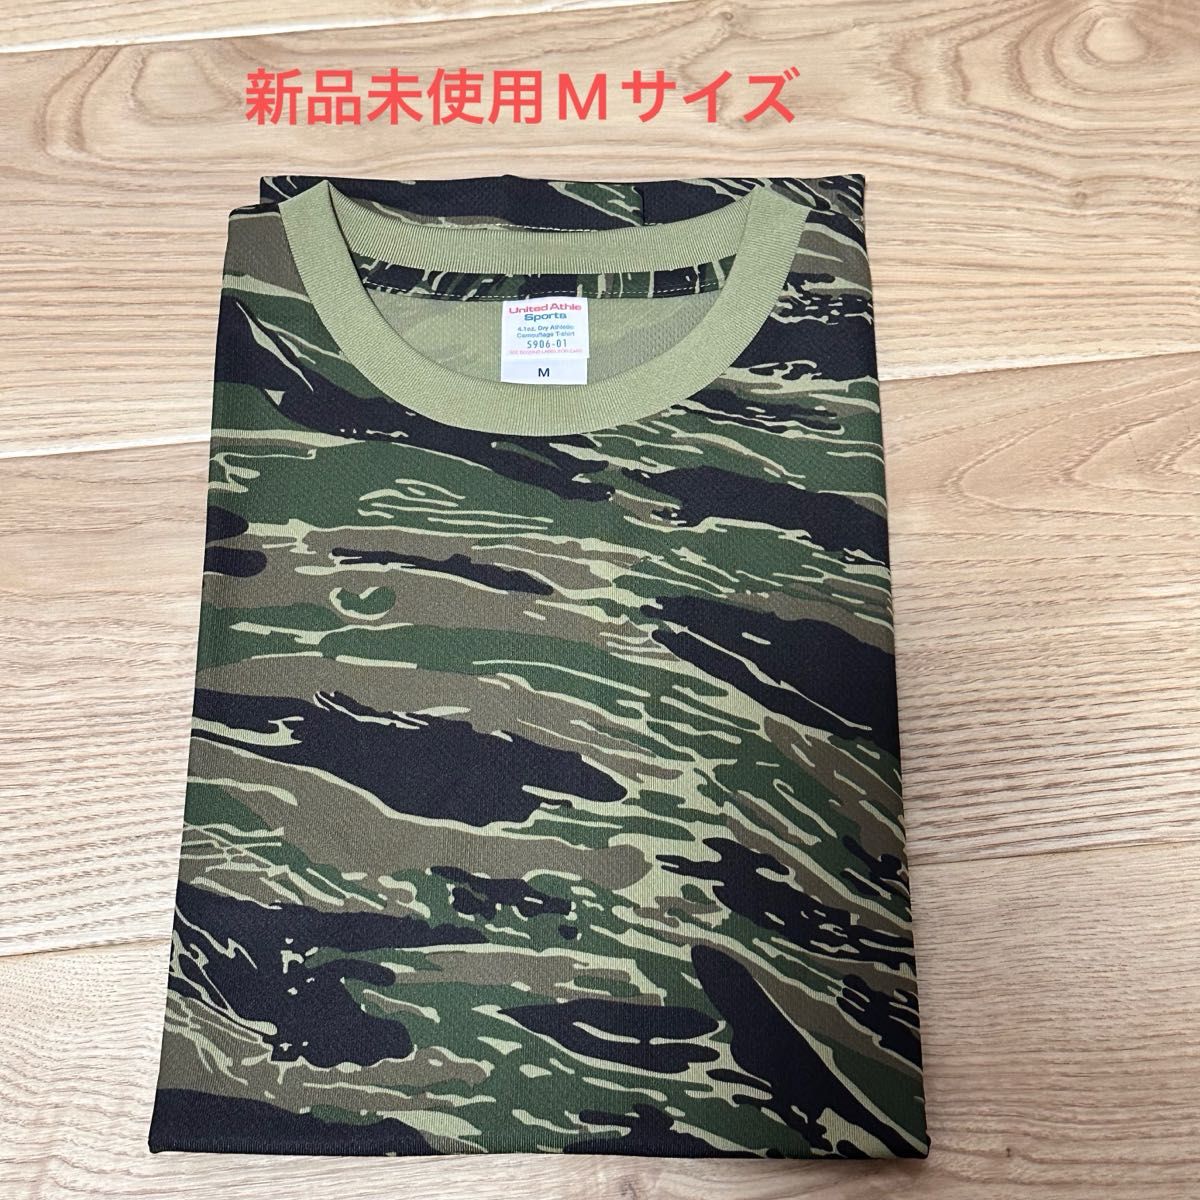 半袖 Tシャツ 迷彩 ユナイテッドアスレドライアスレチック カモフラージュ 5906-01 半袖 UVカット DRY